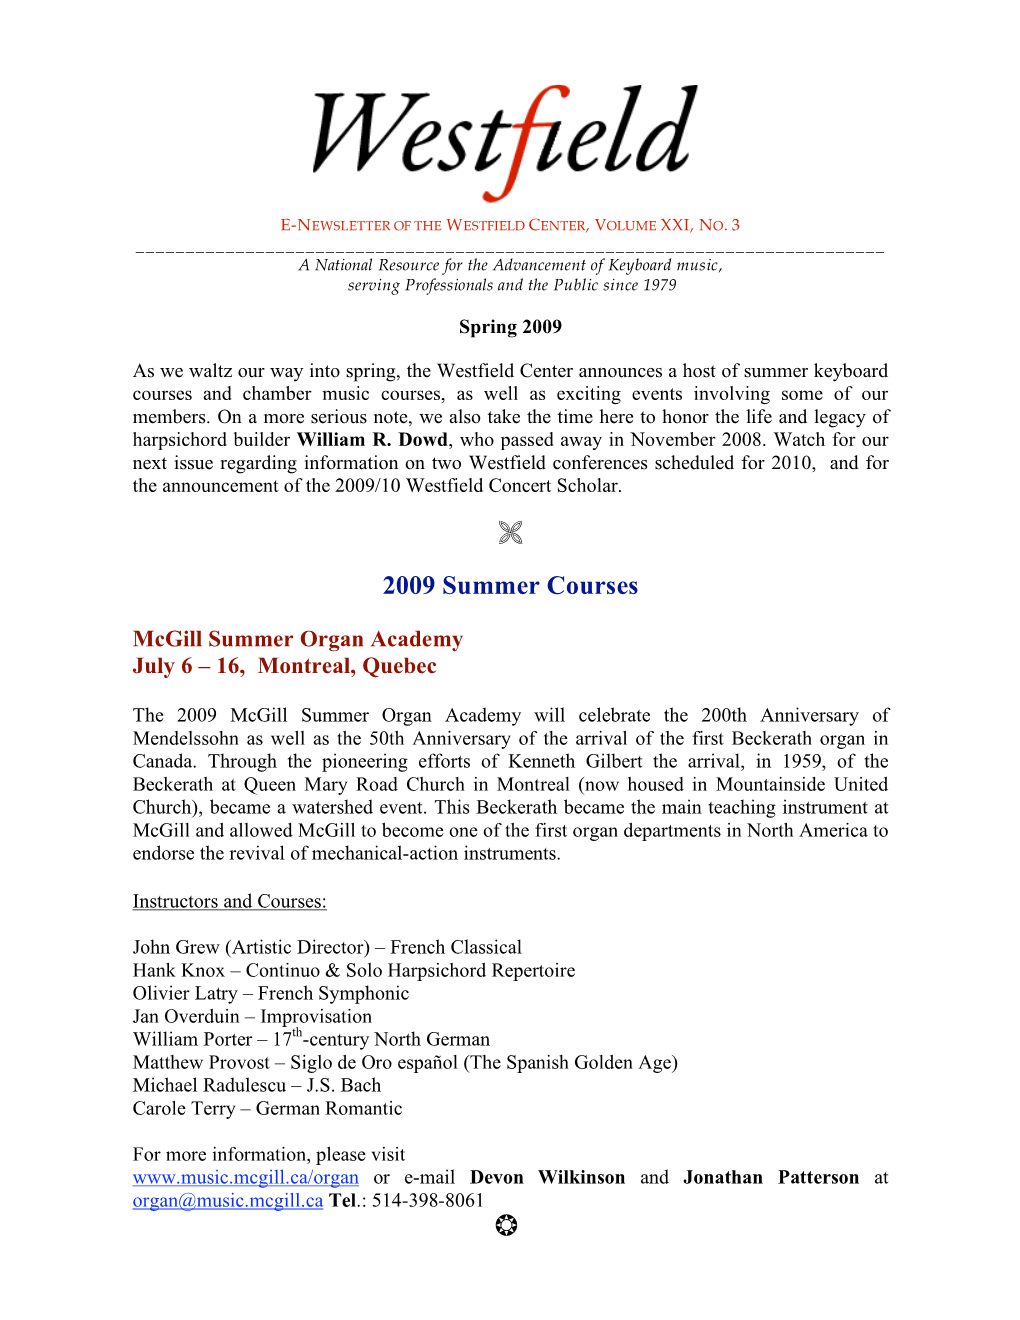 Westfield Newsletter, Vol. XXI, No. 3, Spring 2009